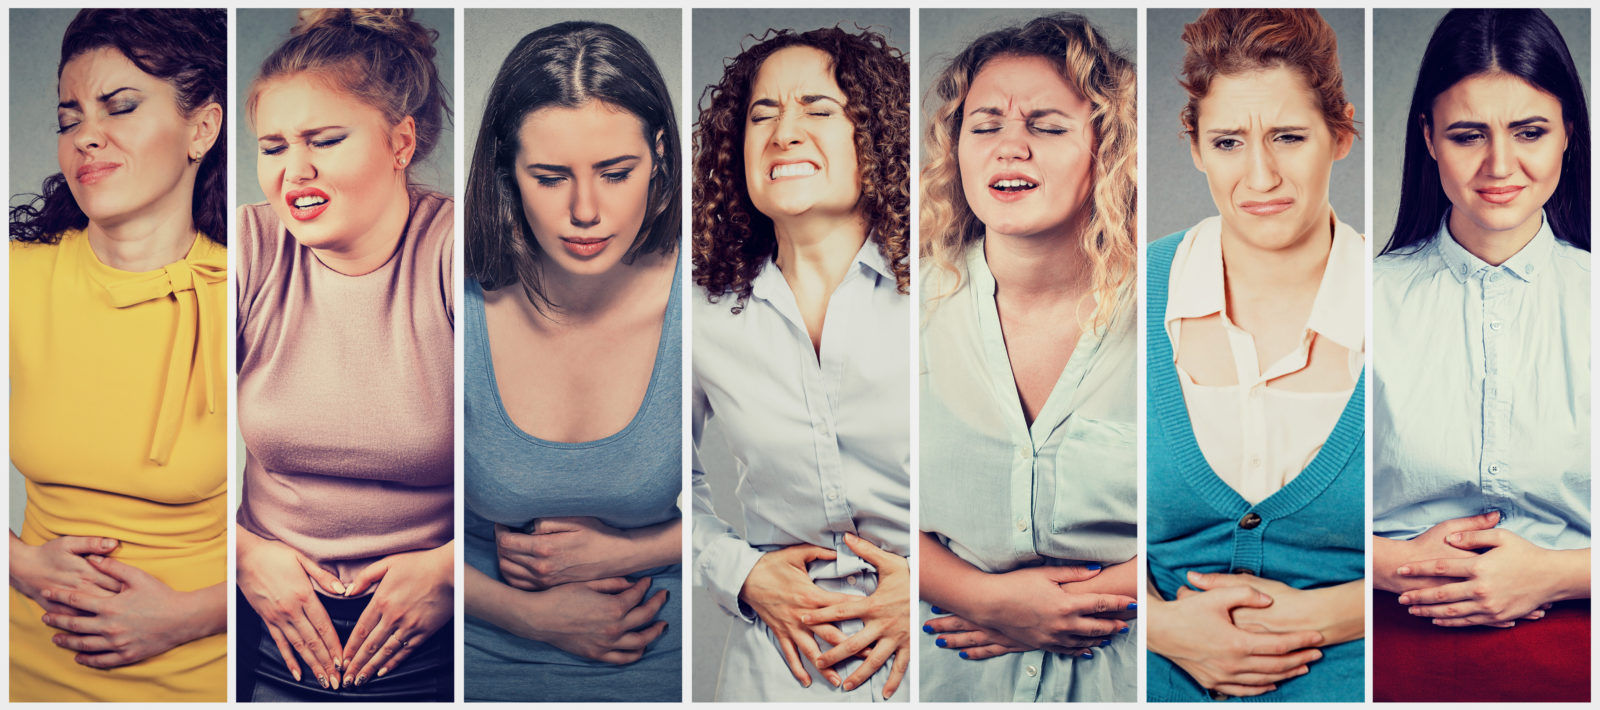 De nombreuses personnes souffrent du syndrome de l'intestin irritable